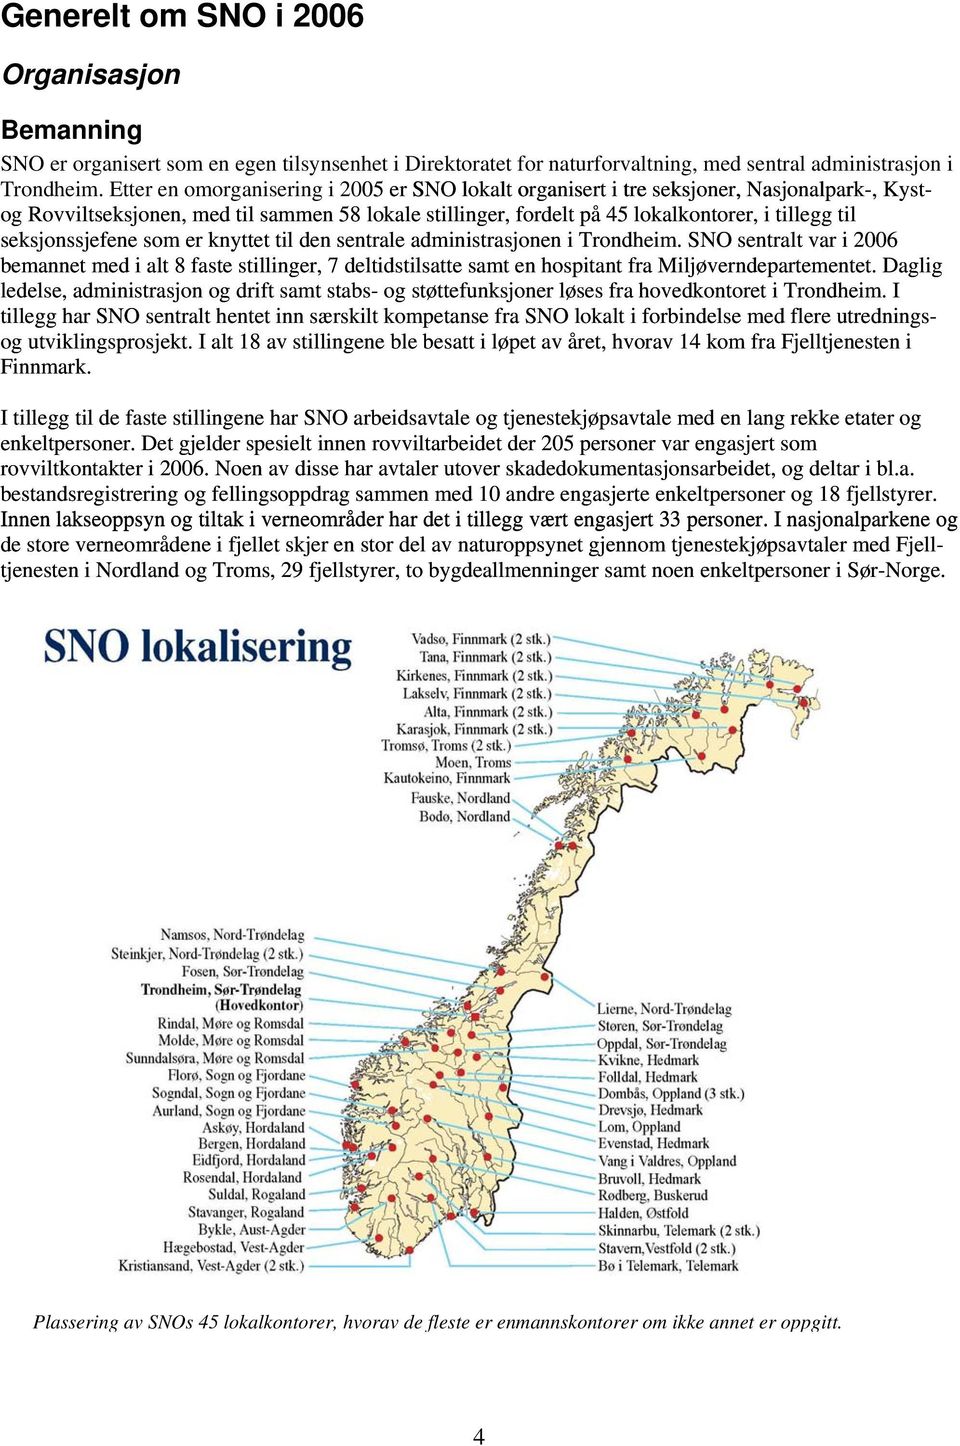 seksjonssjefene som er knyttet til den sentrale administrasjonen i Trondheim.